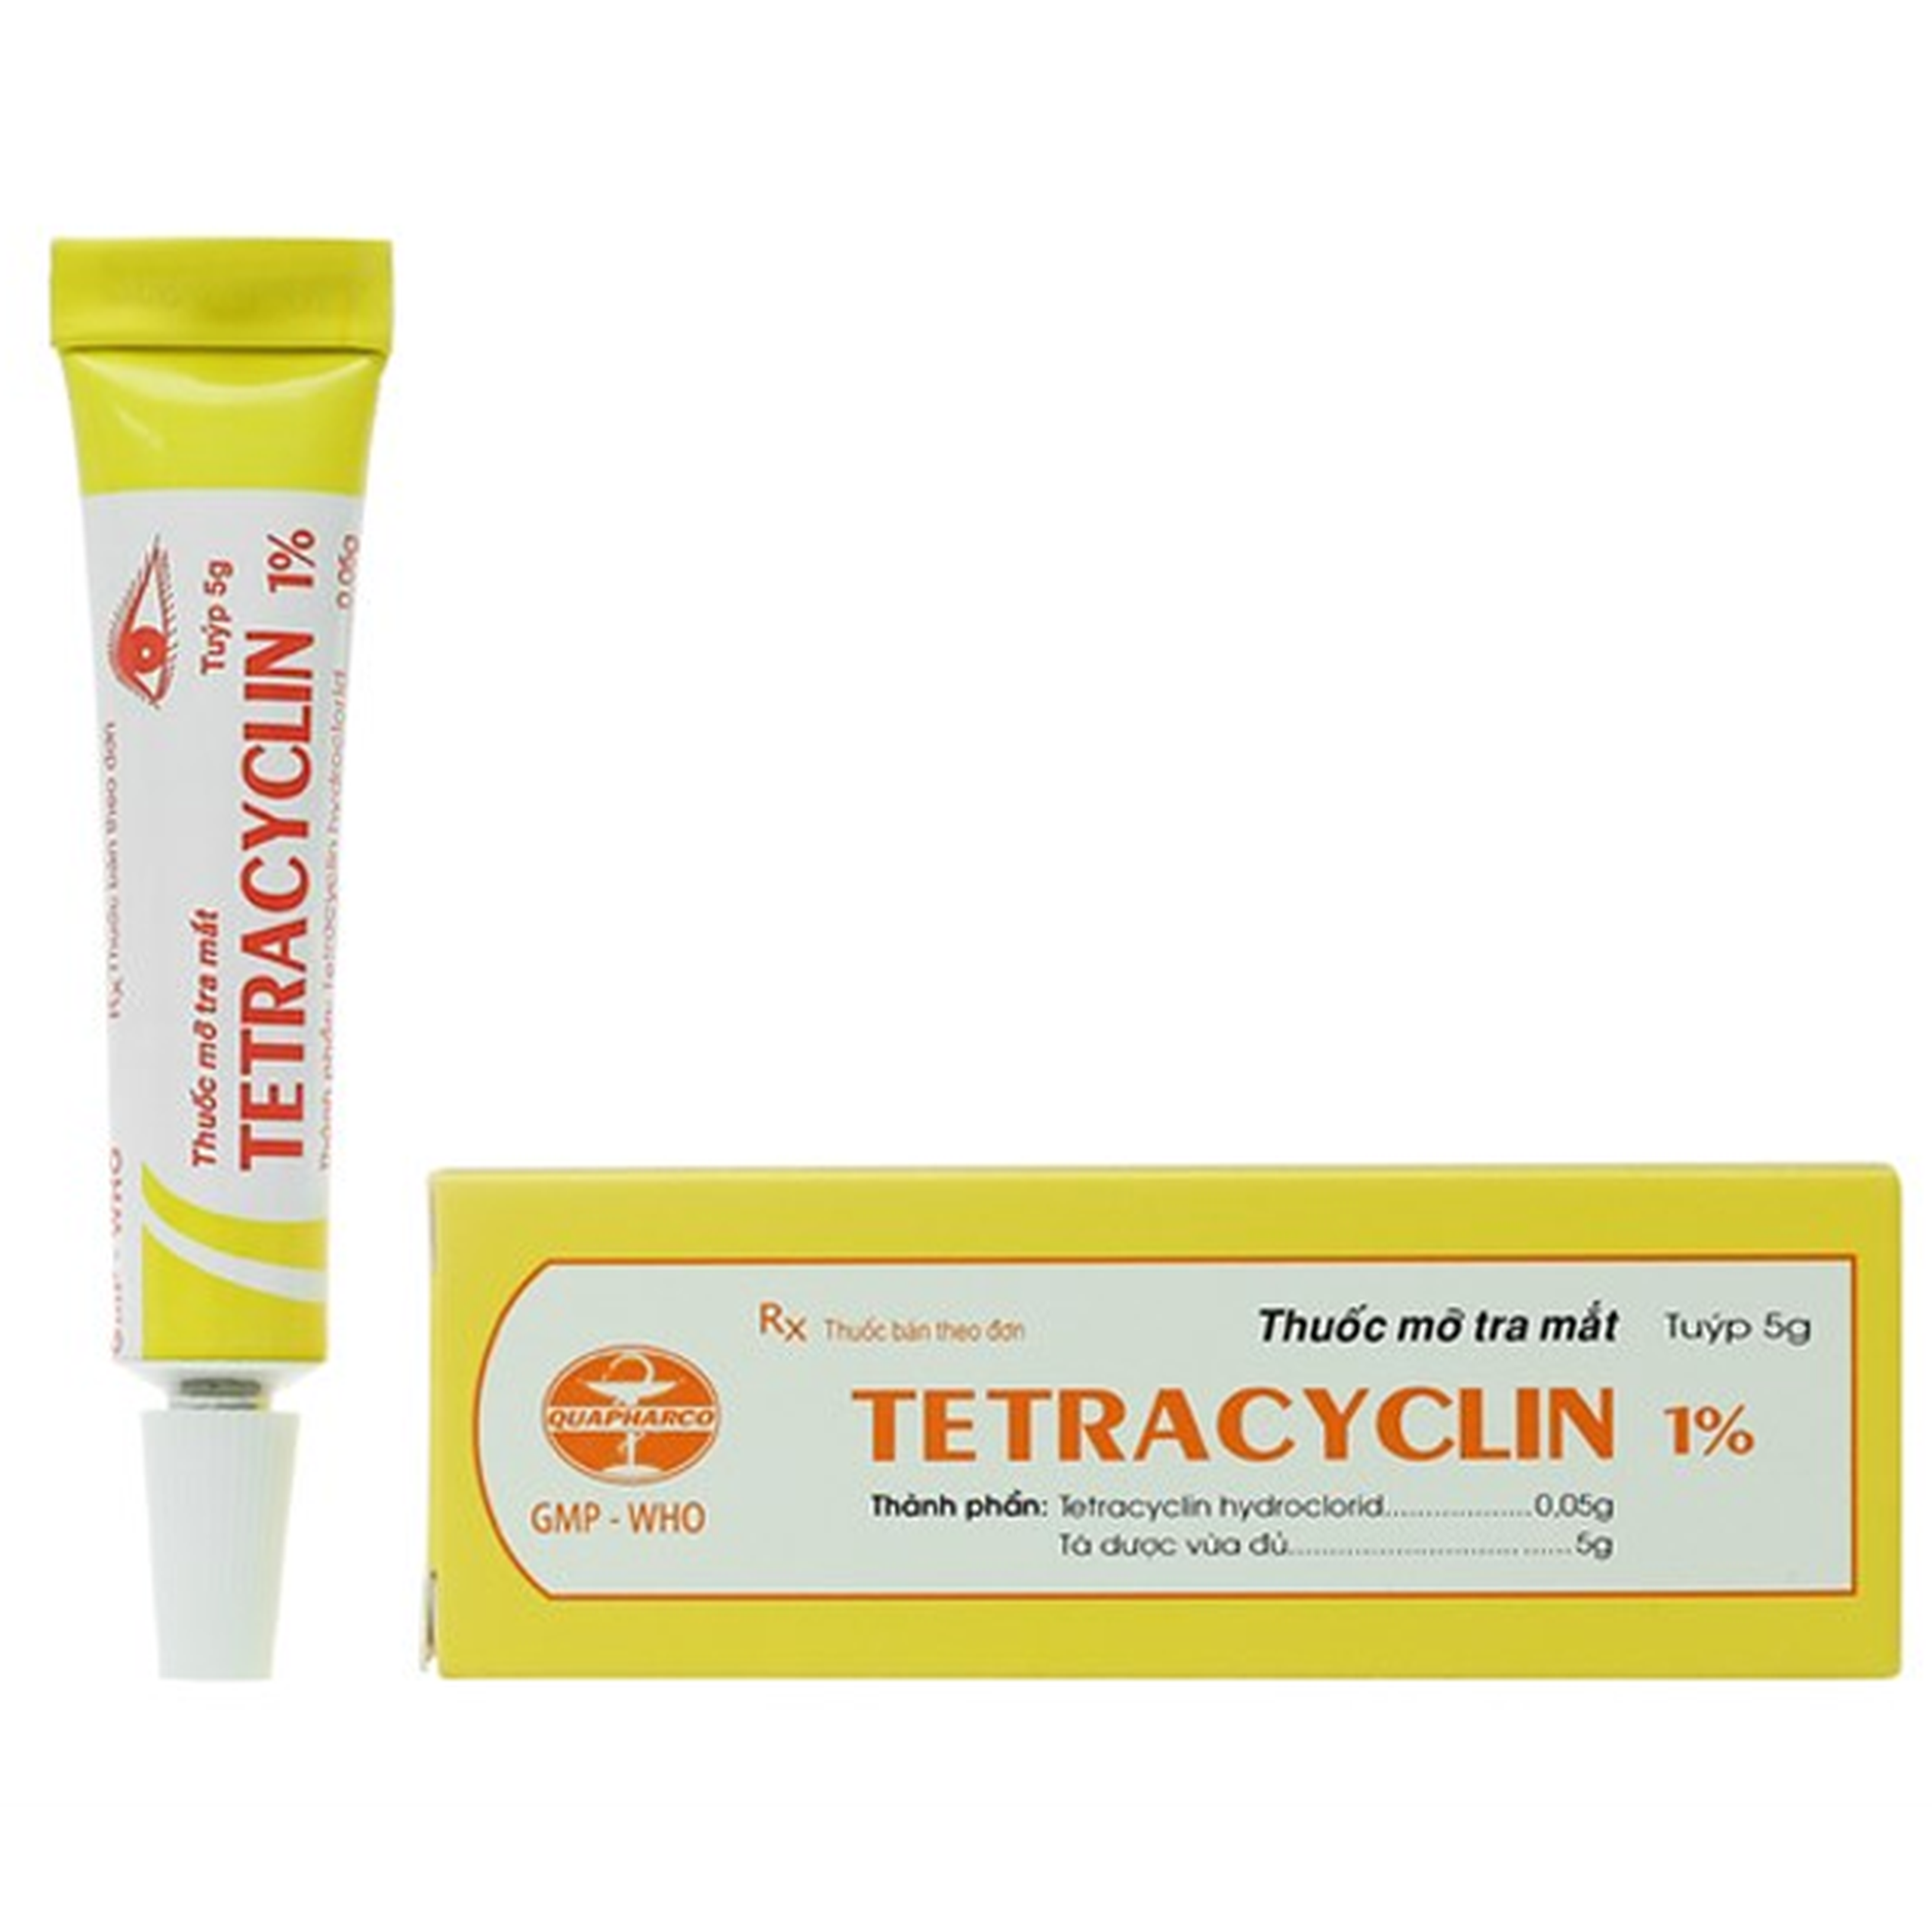 Thuốc mỡ tra mắt Tetracyclin 1% Quapharco điều trị viêm kết mạc, đau mắt hột (5g)